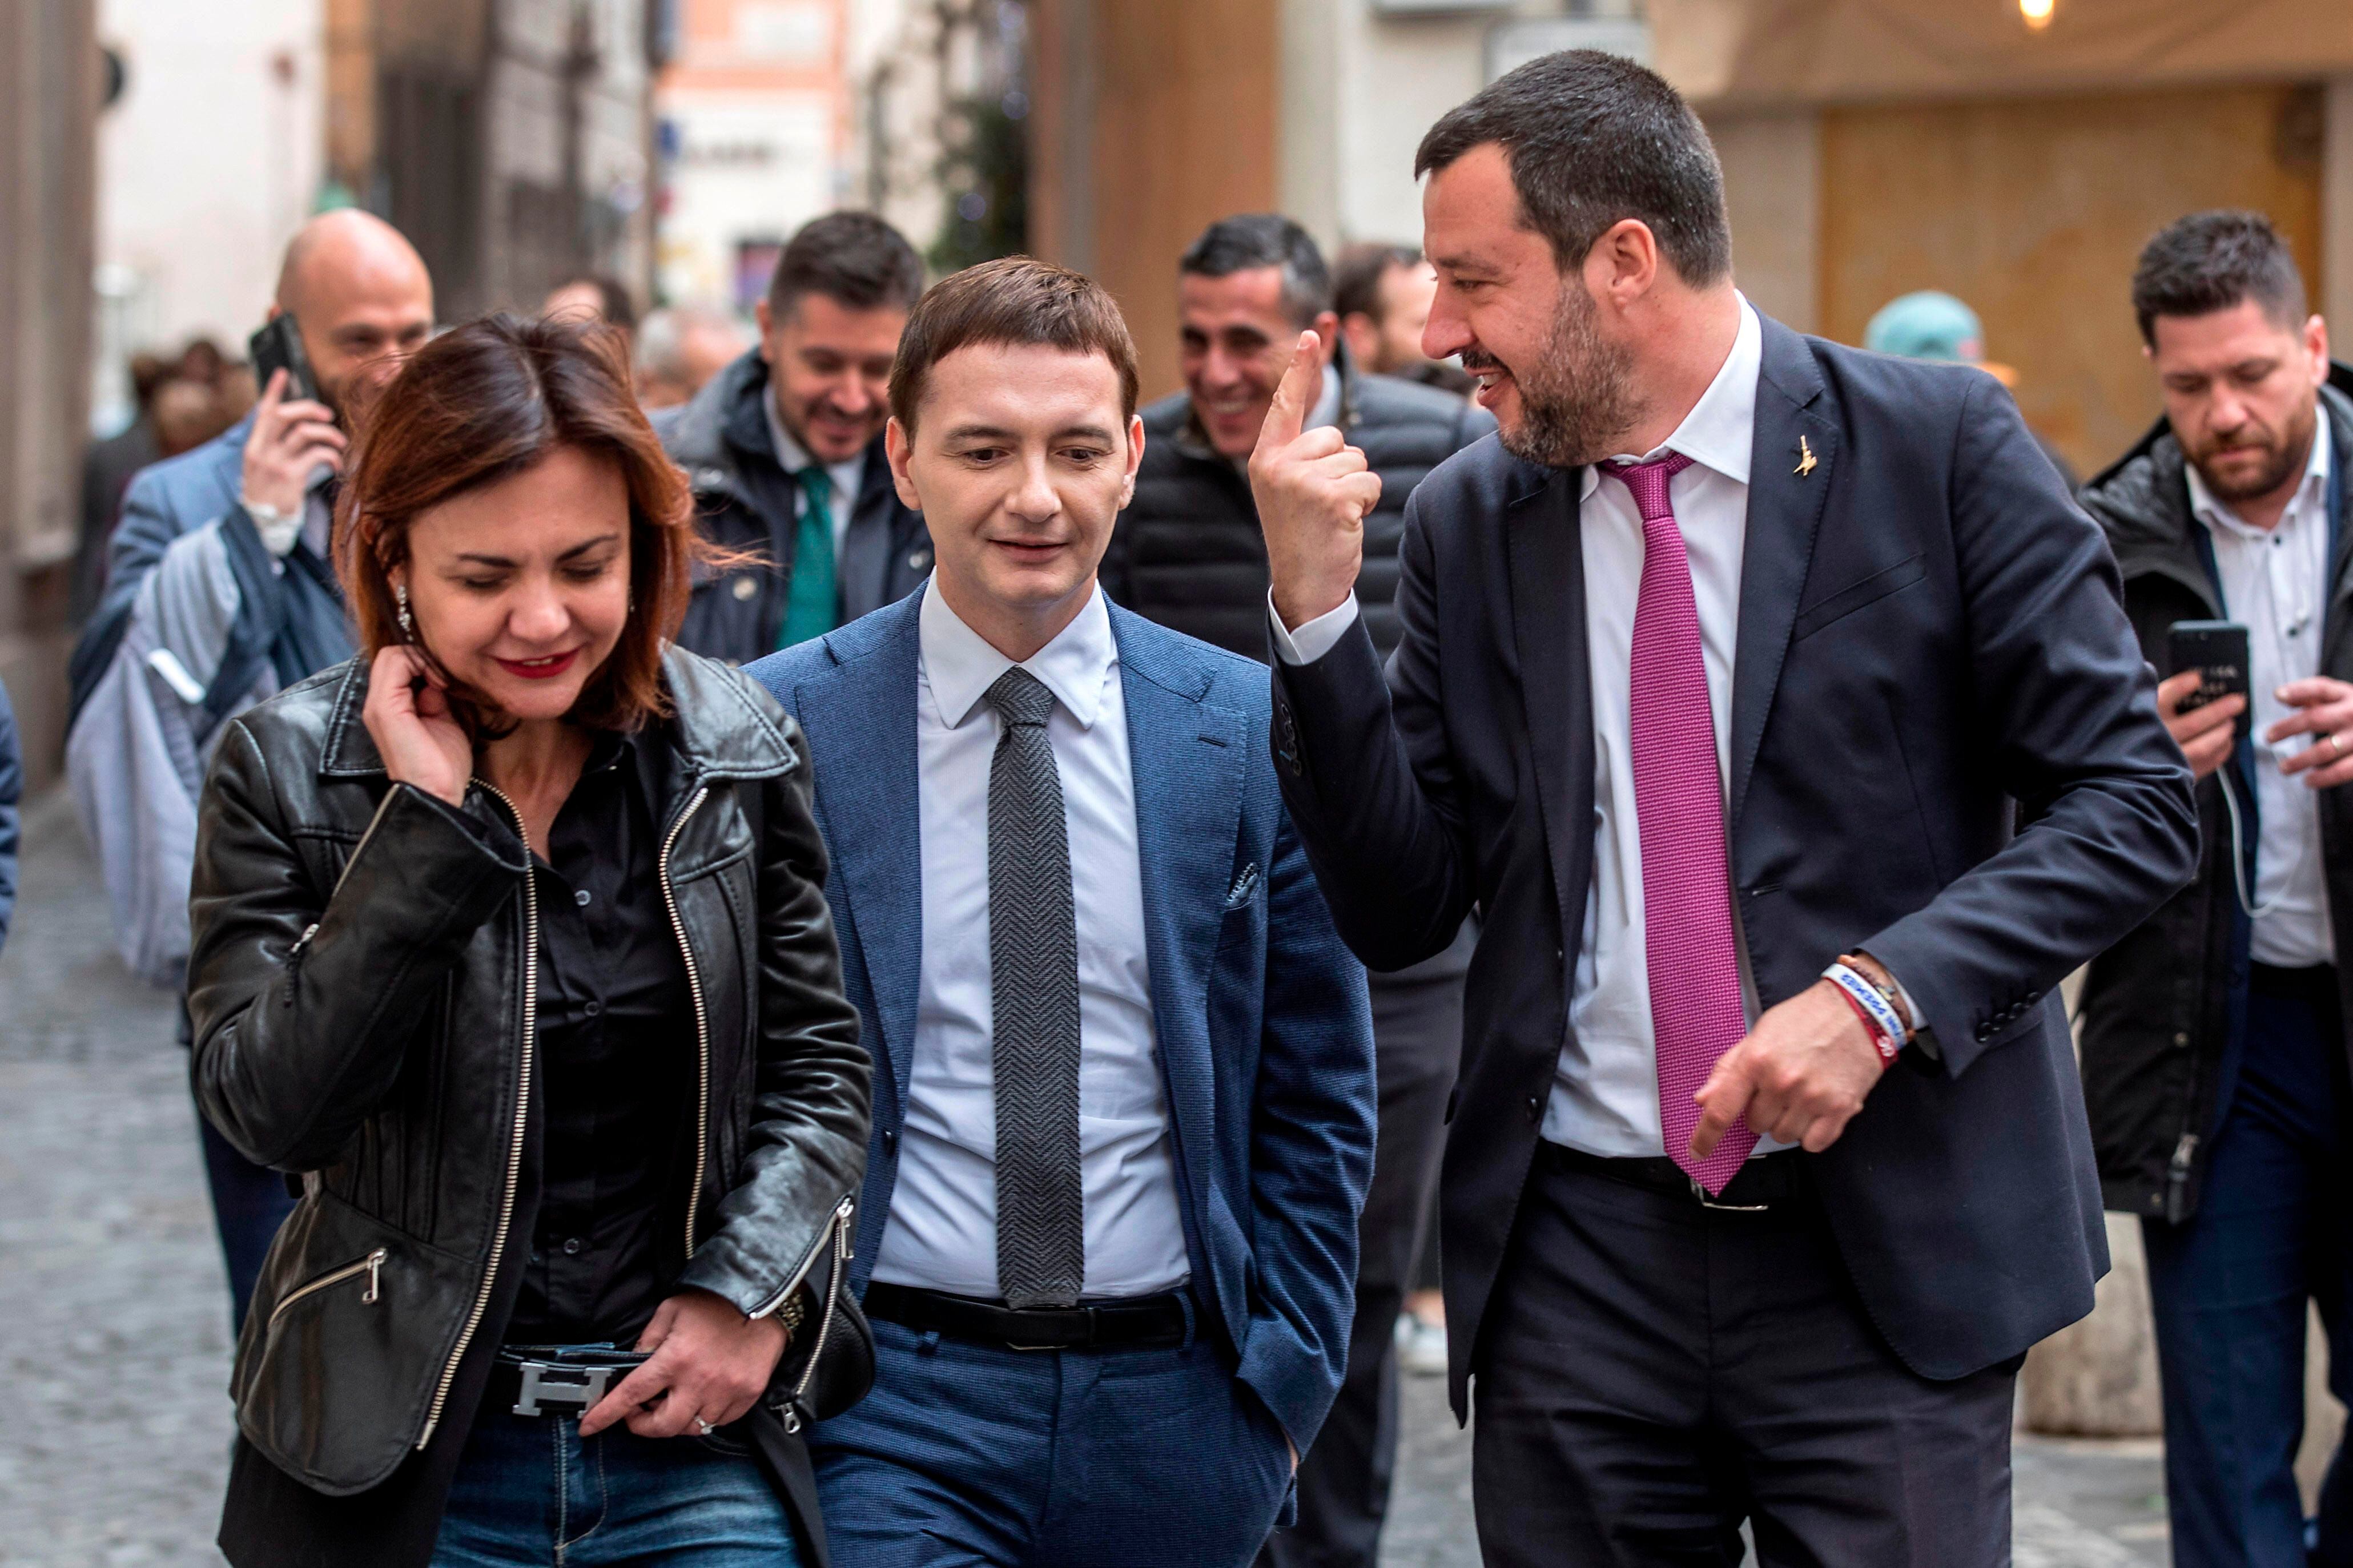 Iva Garibaldi (entonces portavoz de Salvini), Luca Morisi (responsable de comunicación) y Matteo Salvini (en ese momento, ministro del Interior), en Roma, en marzo de 2019.